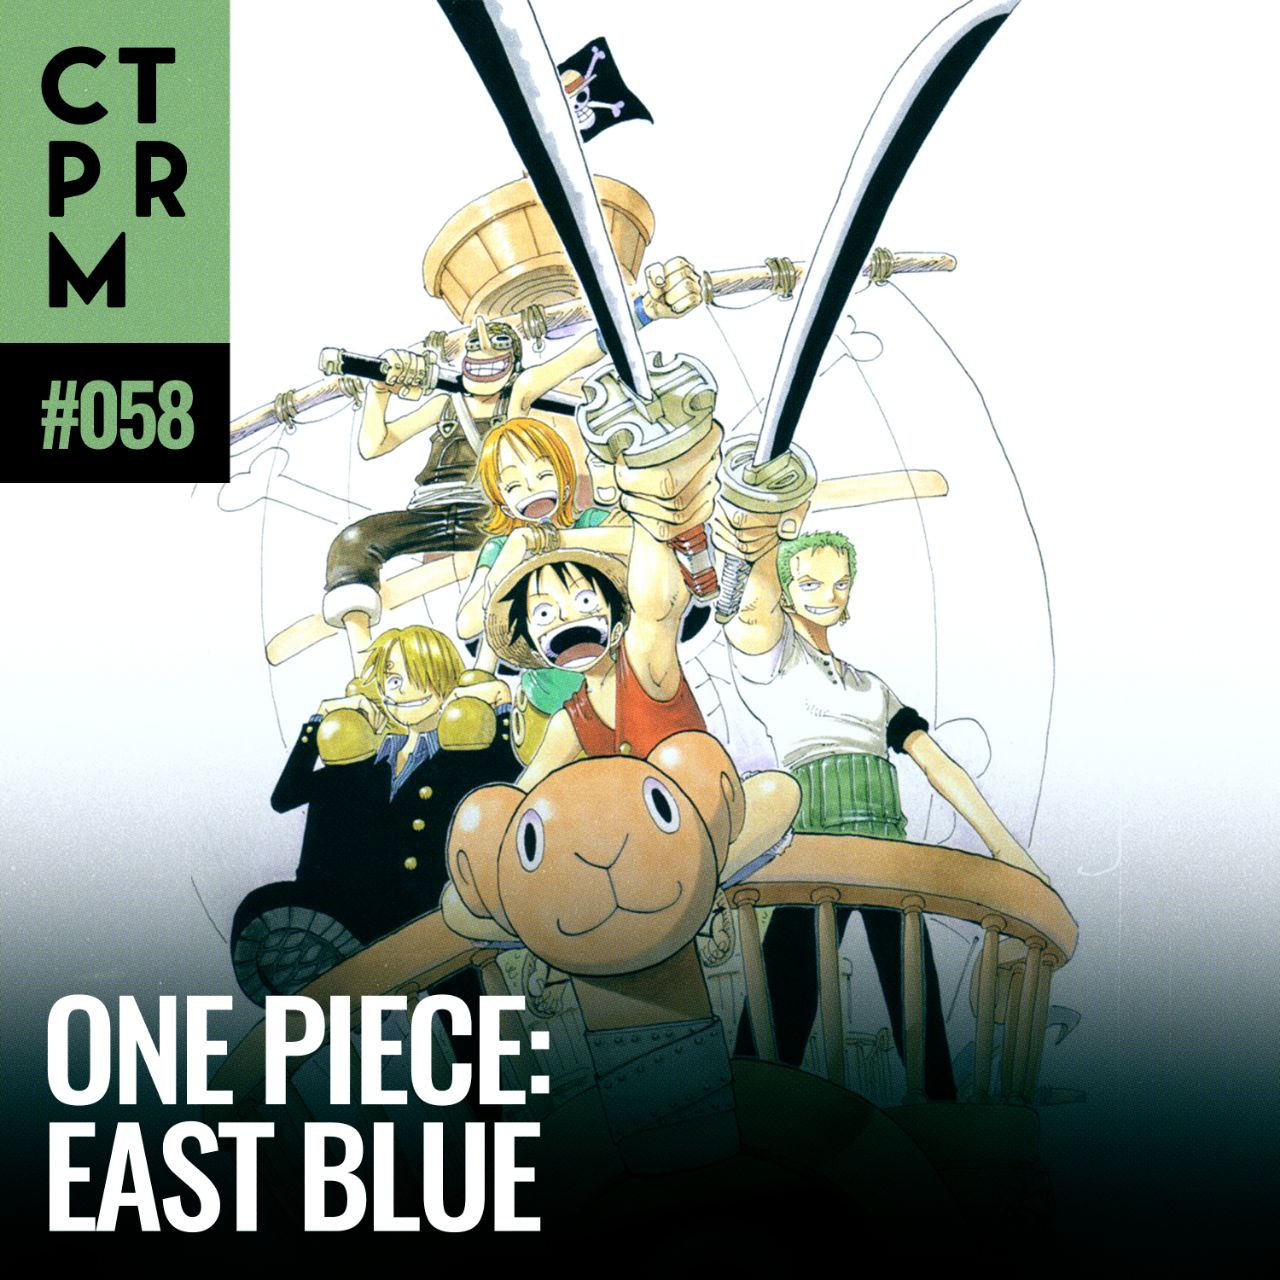 ONE PIECE: A Série' inicia uma nova jornada na Saga East Blue